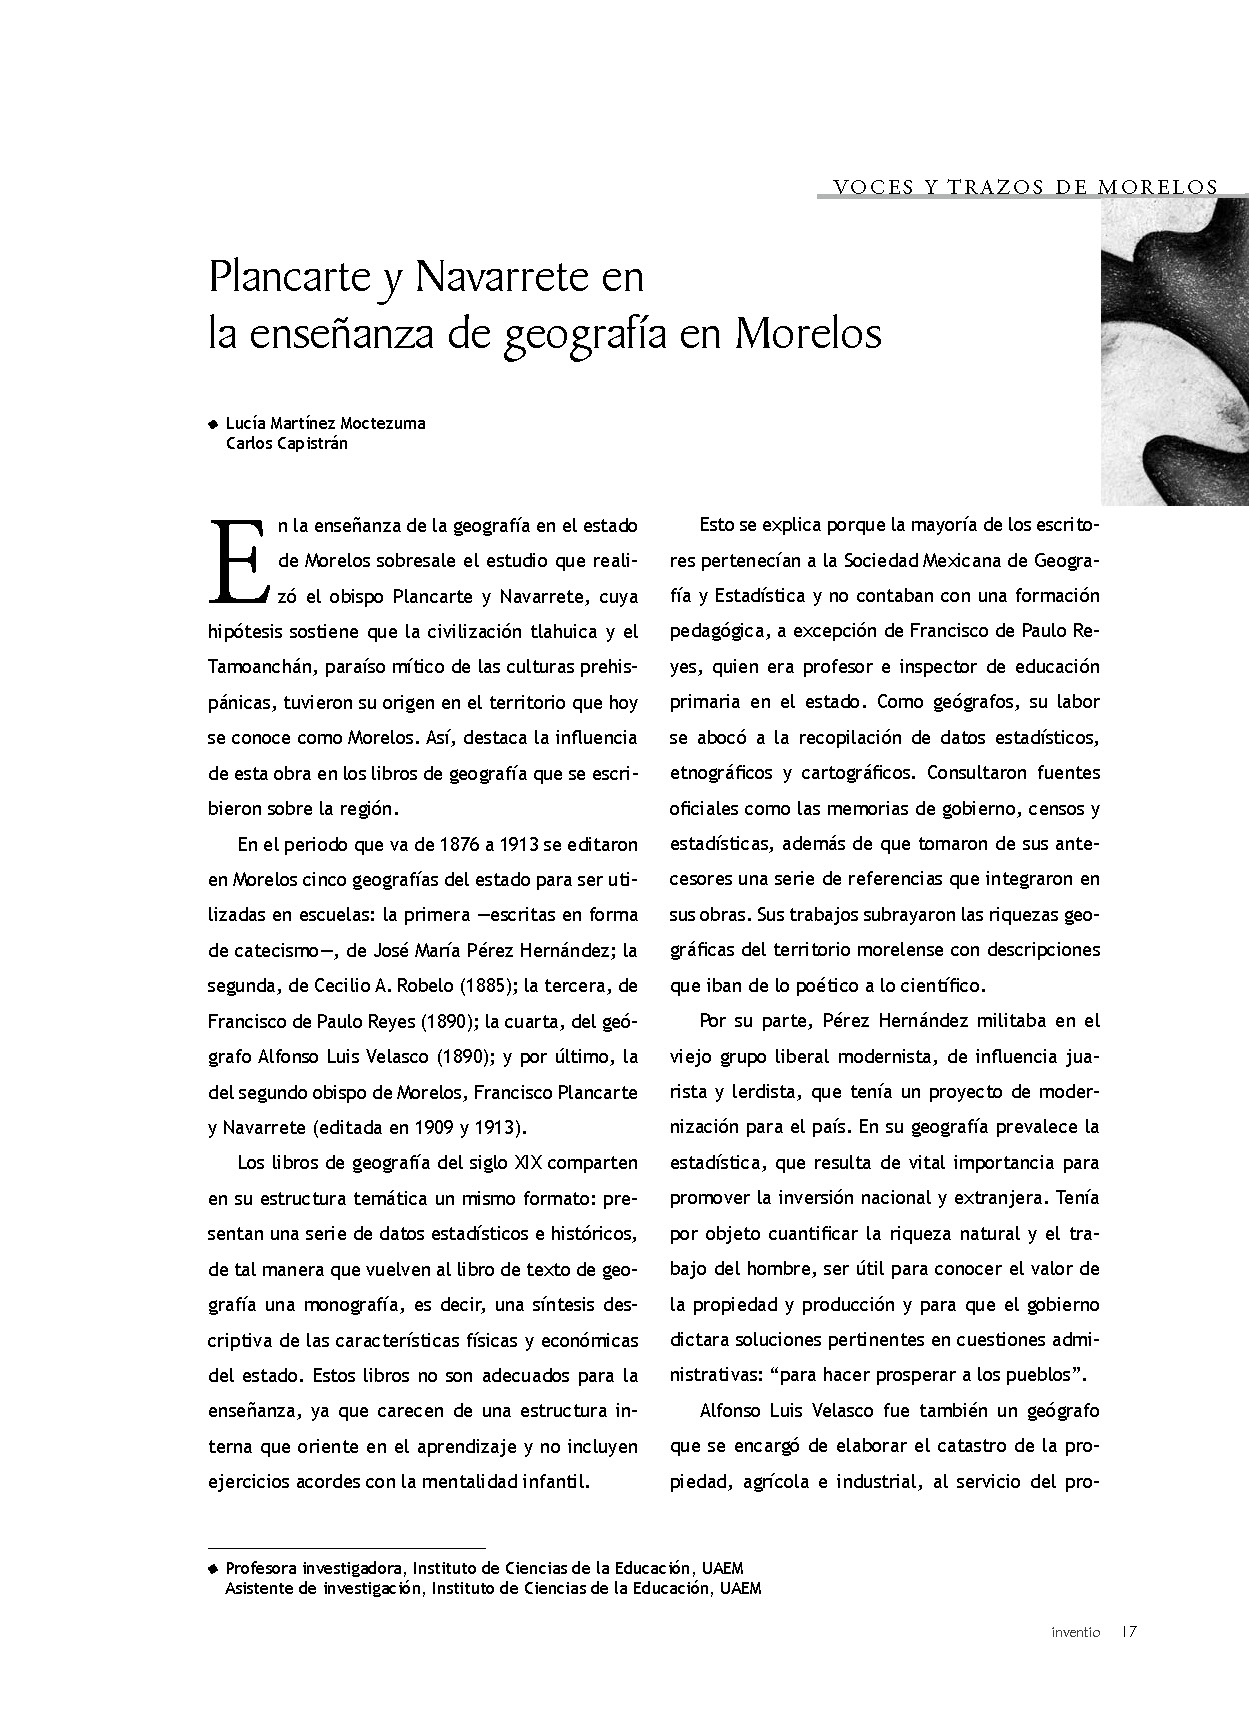 Plancarte y Navarrete en la enseñanza de geografía en Morelos